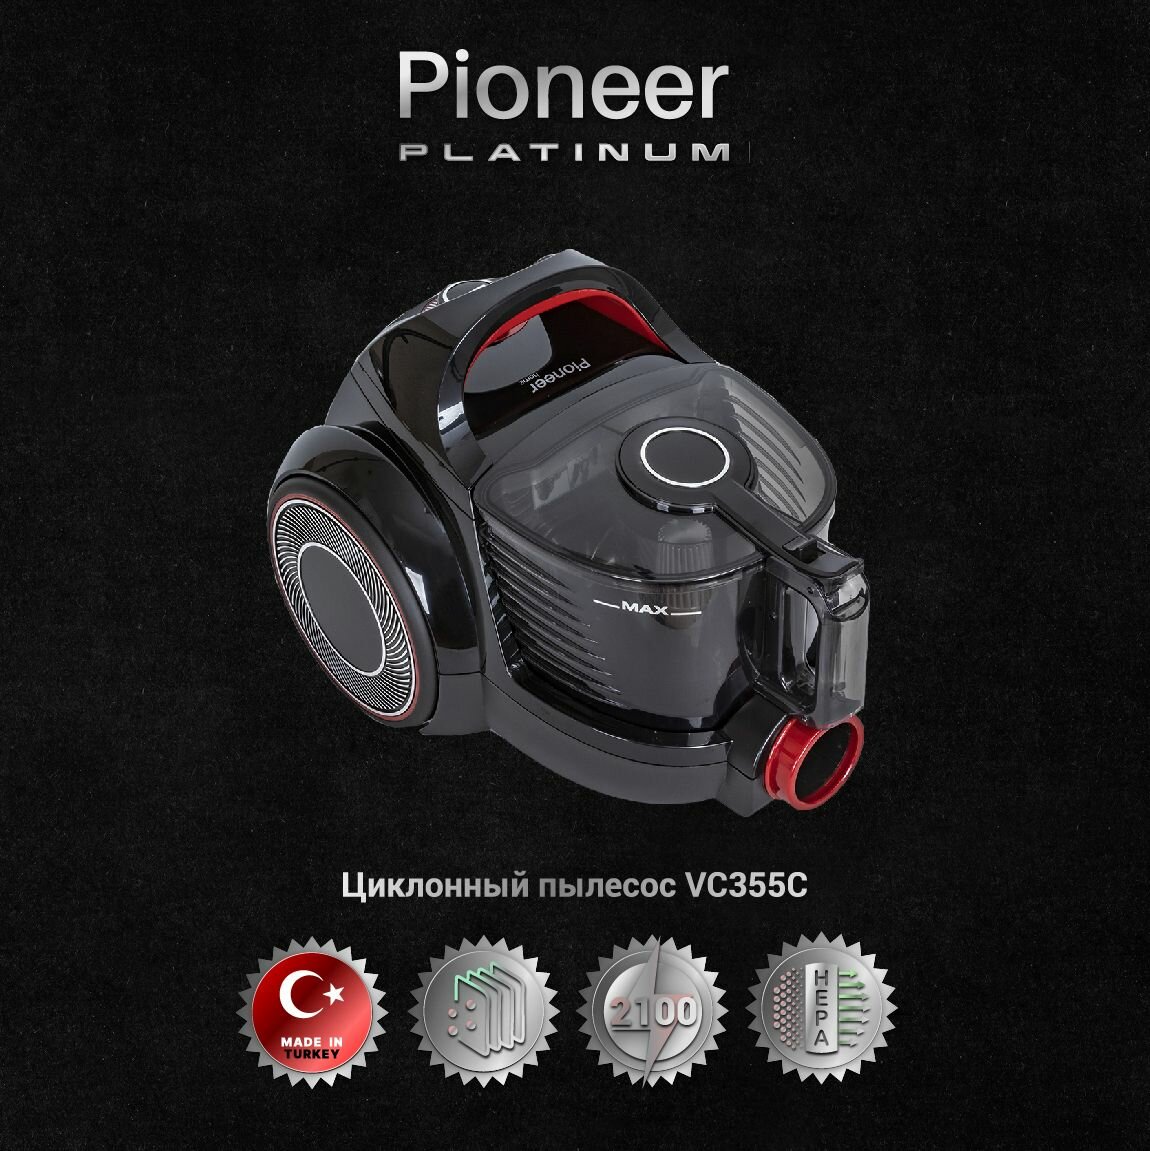 Пылесос для дома Pioneer VC355C с мотором повышенной эффективности / Пылесос без мешка с контейнером 2,5 литра / 4 уровня фильтрации, 5 насадок, 2100 Вт